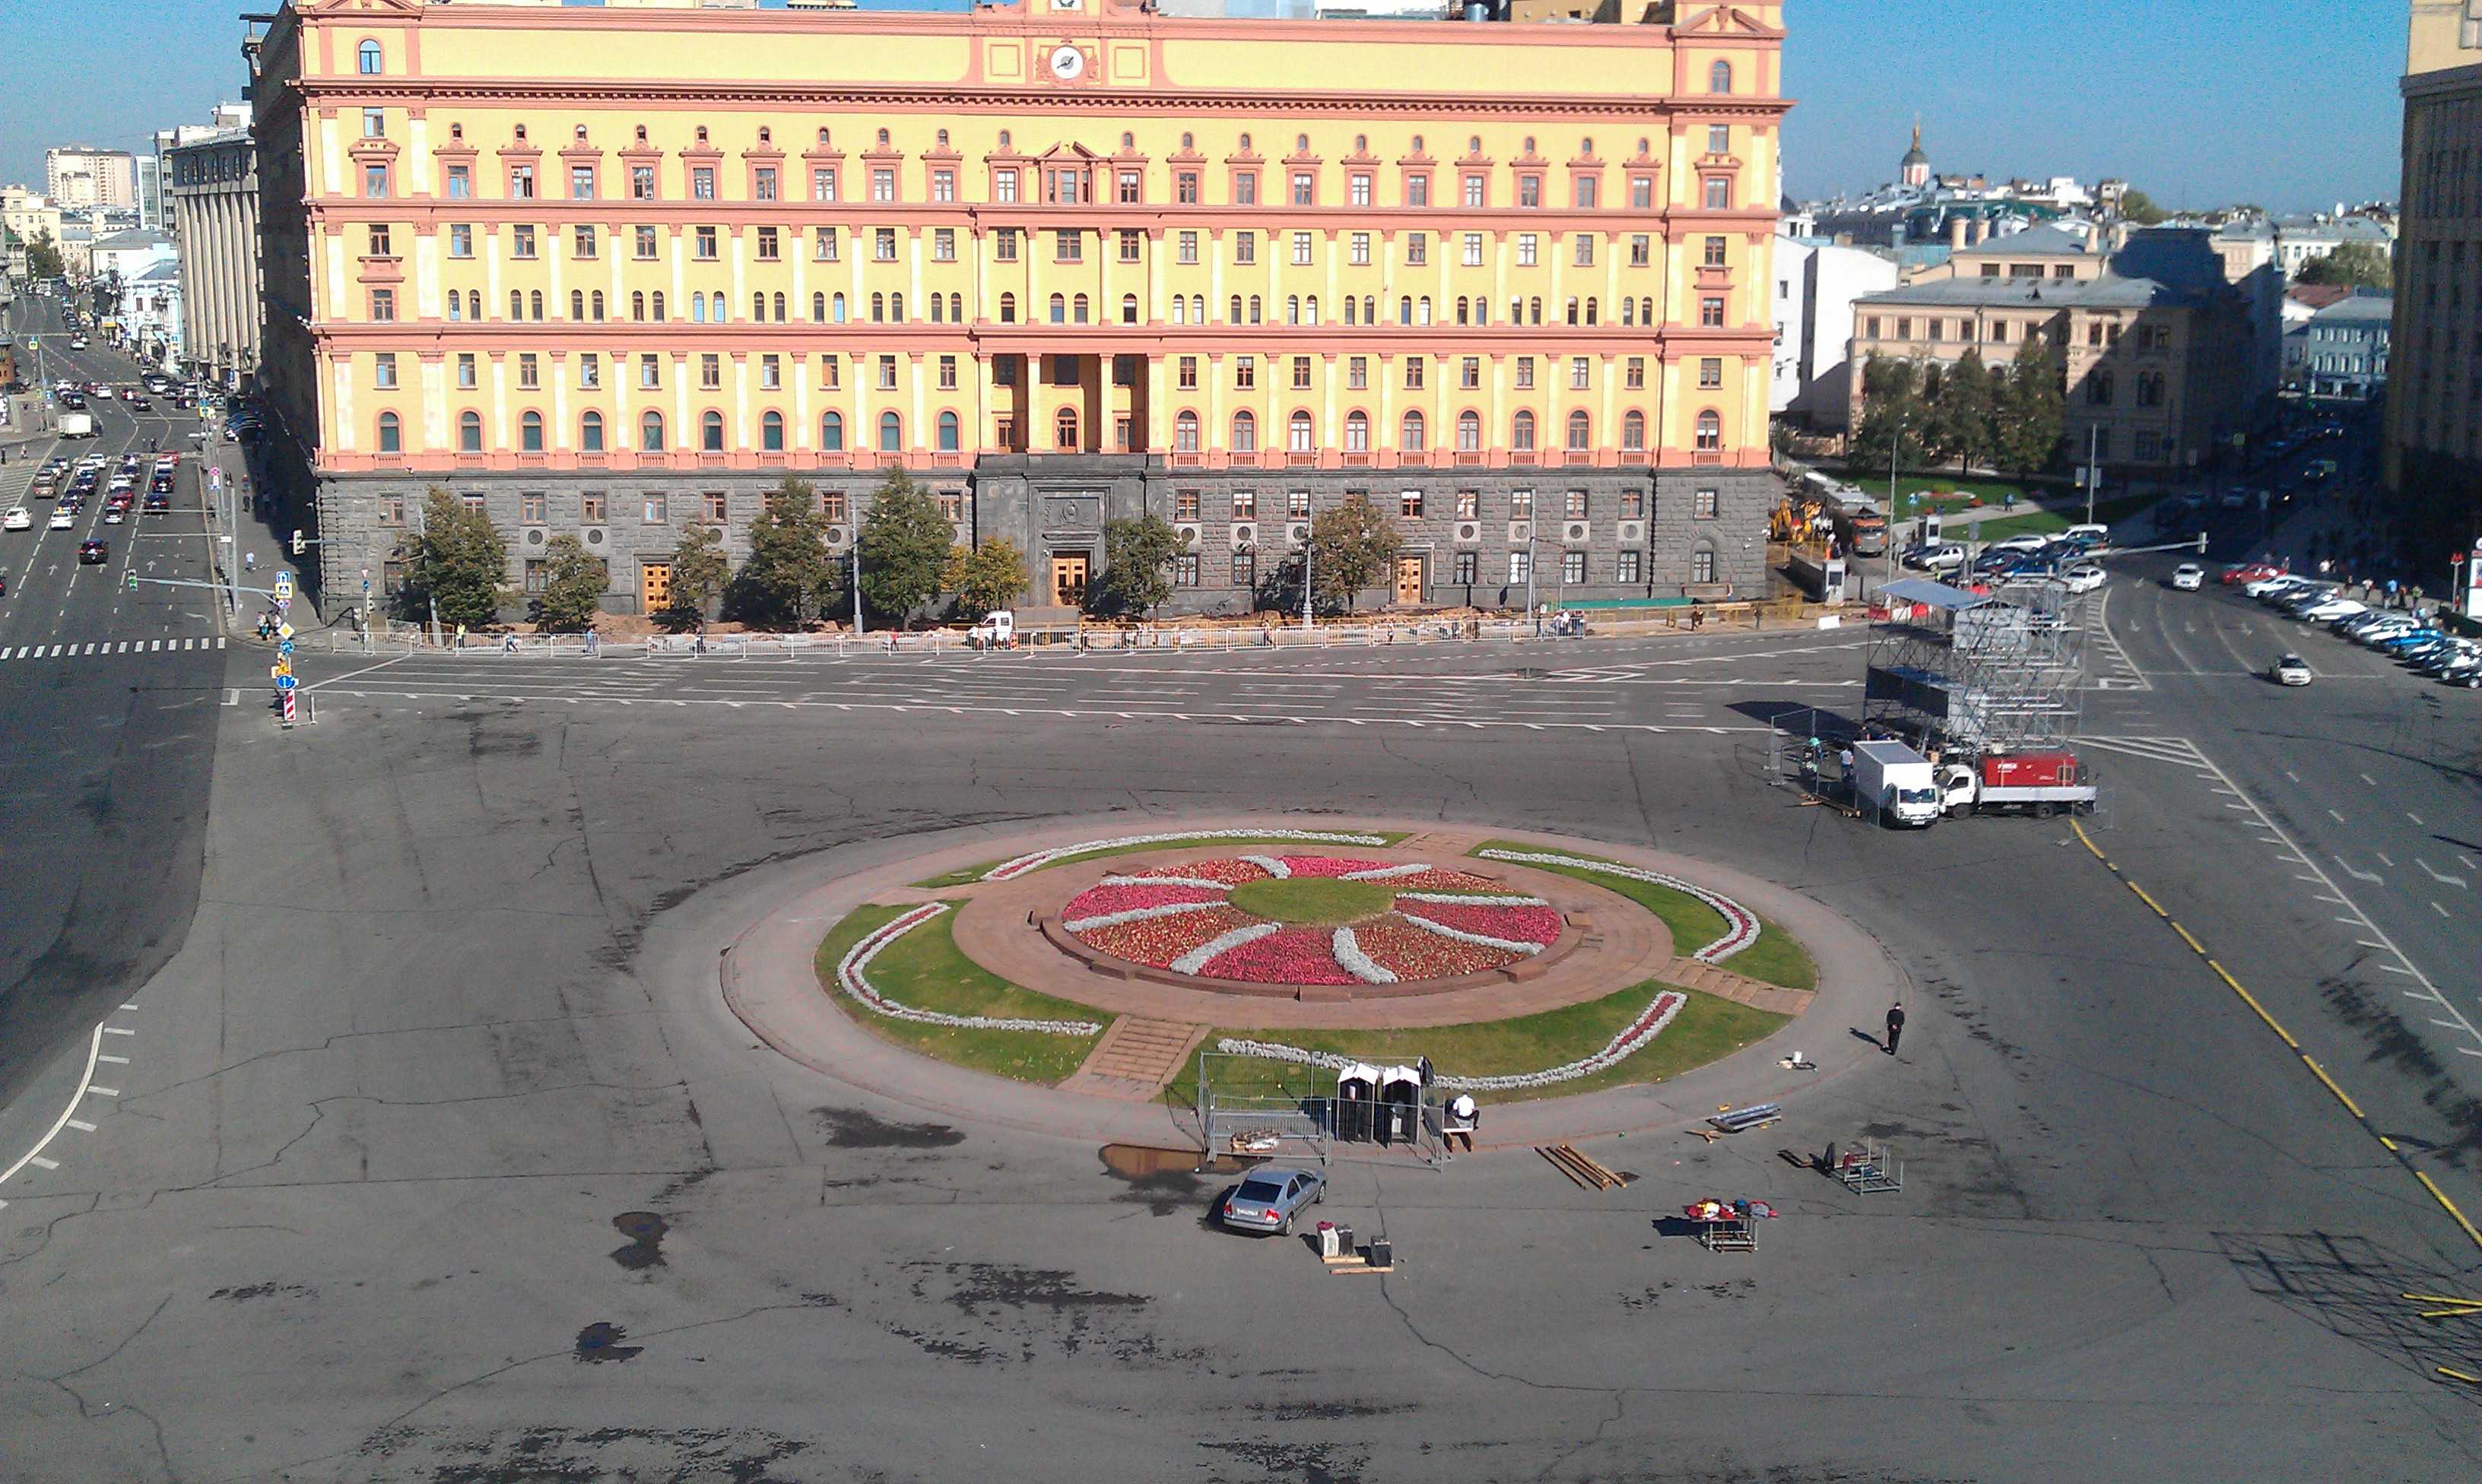 На Лубянской площади пока не будет памятника: плюрализм мнений привел к спорам и остановке проекта